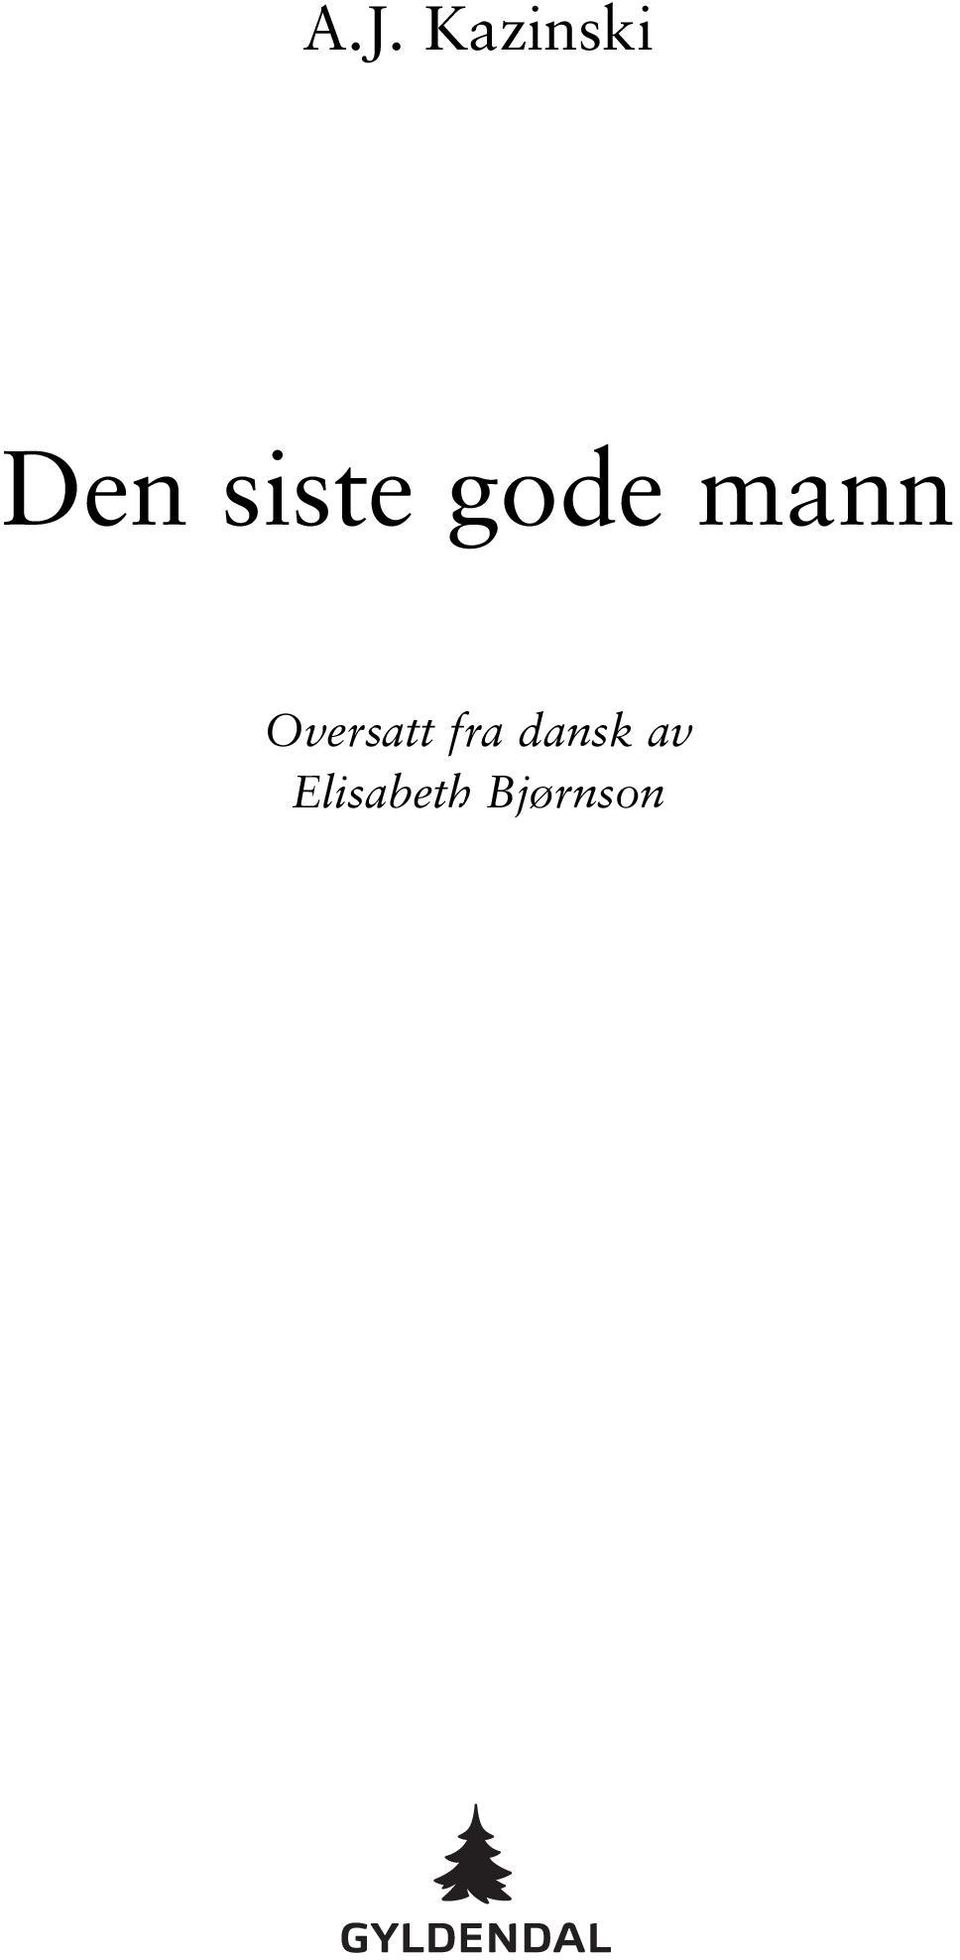 Oversatt fra dansk